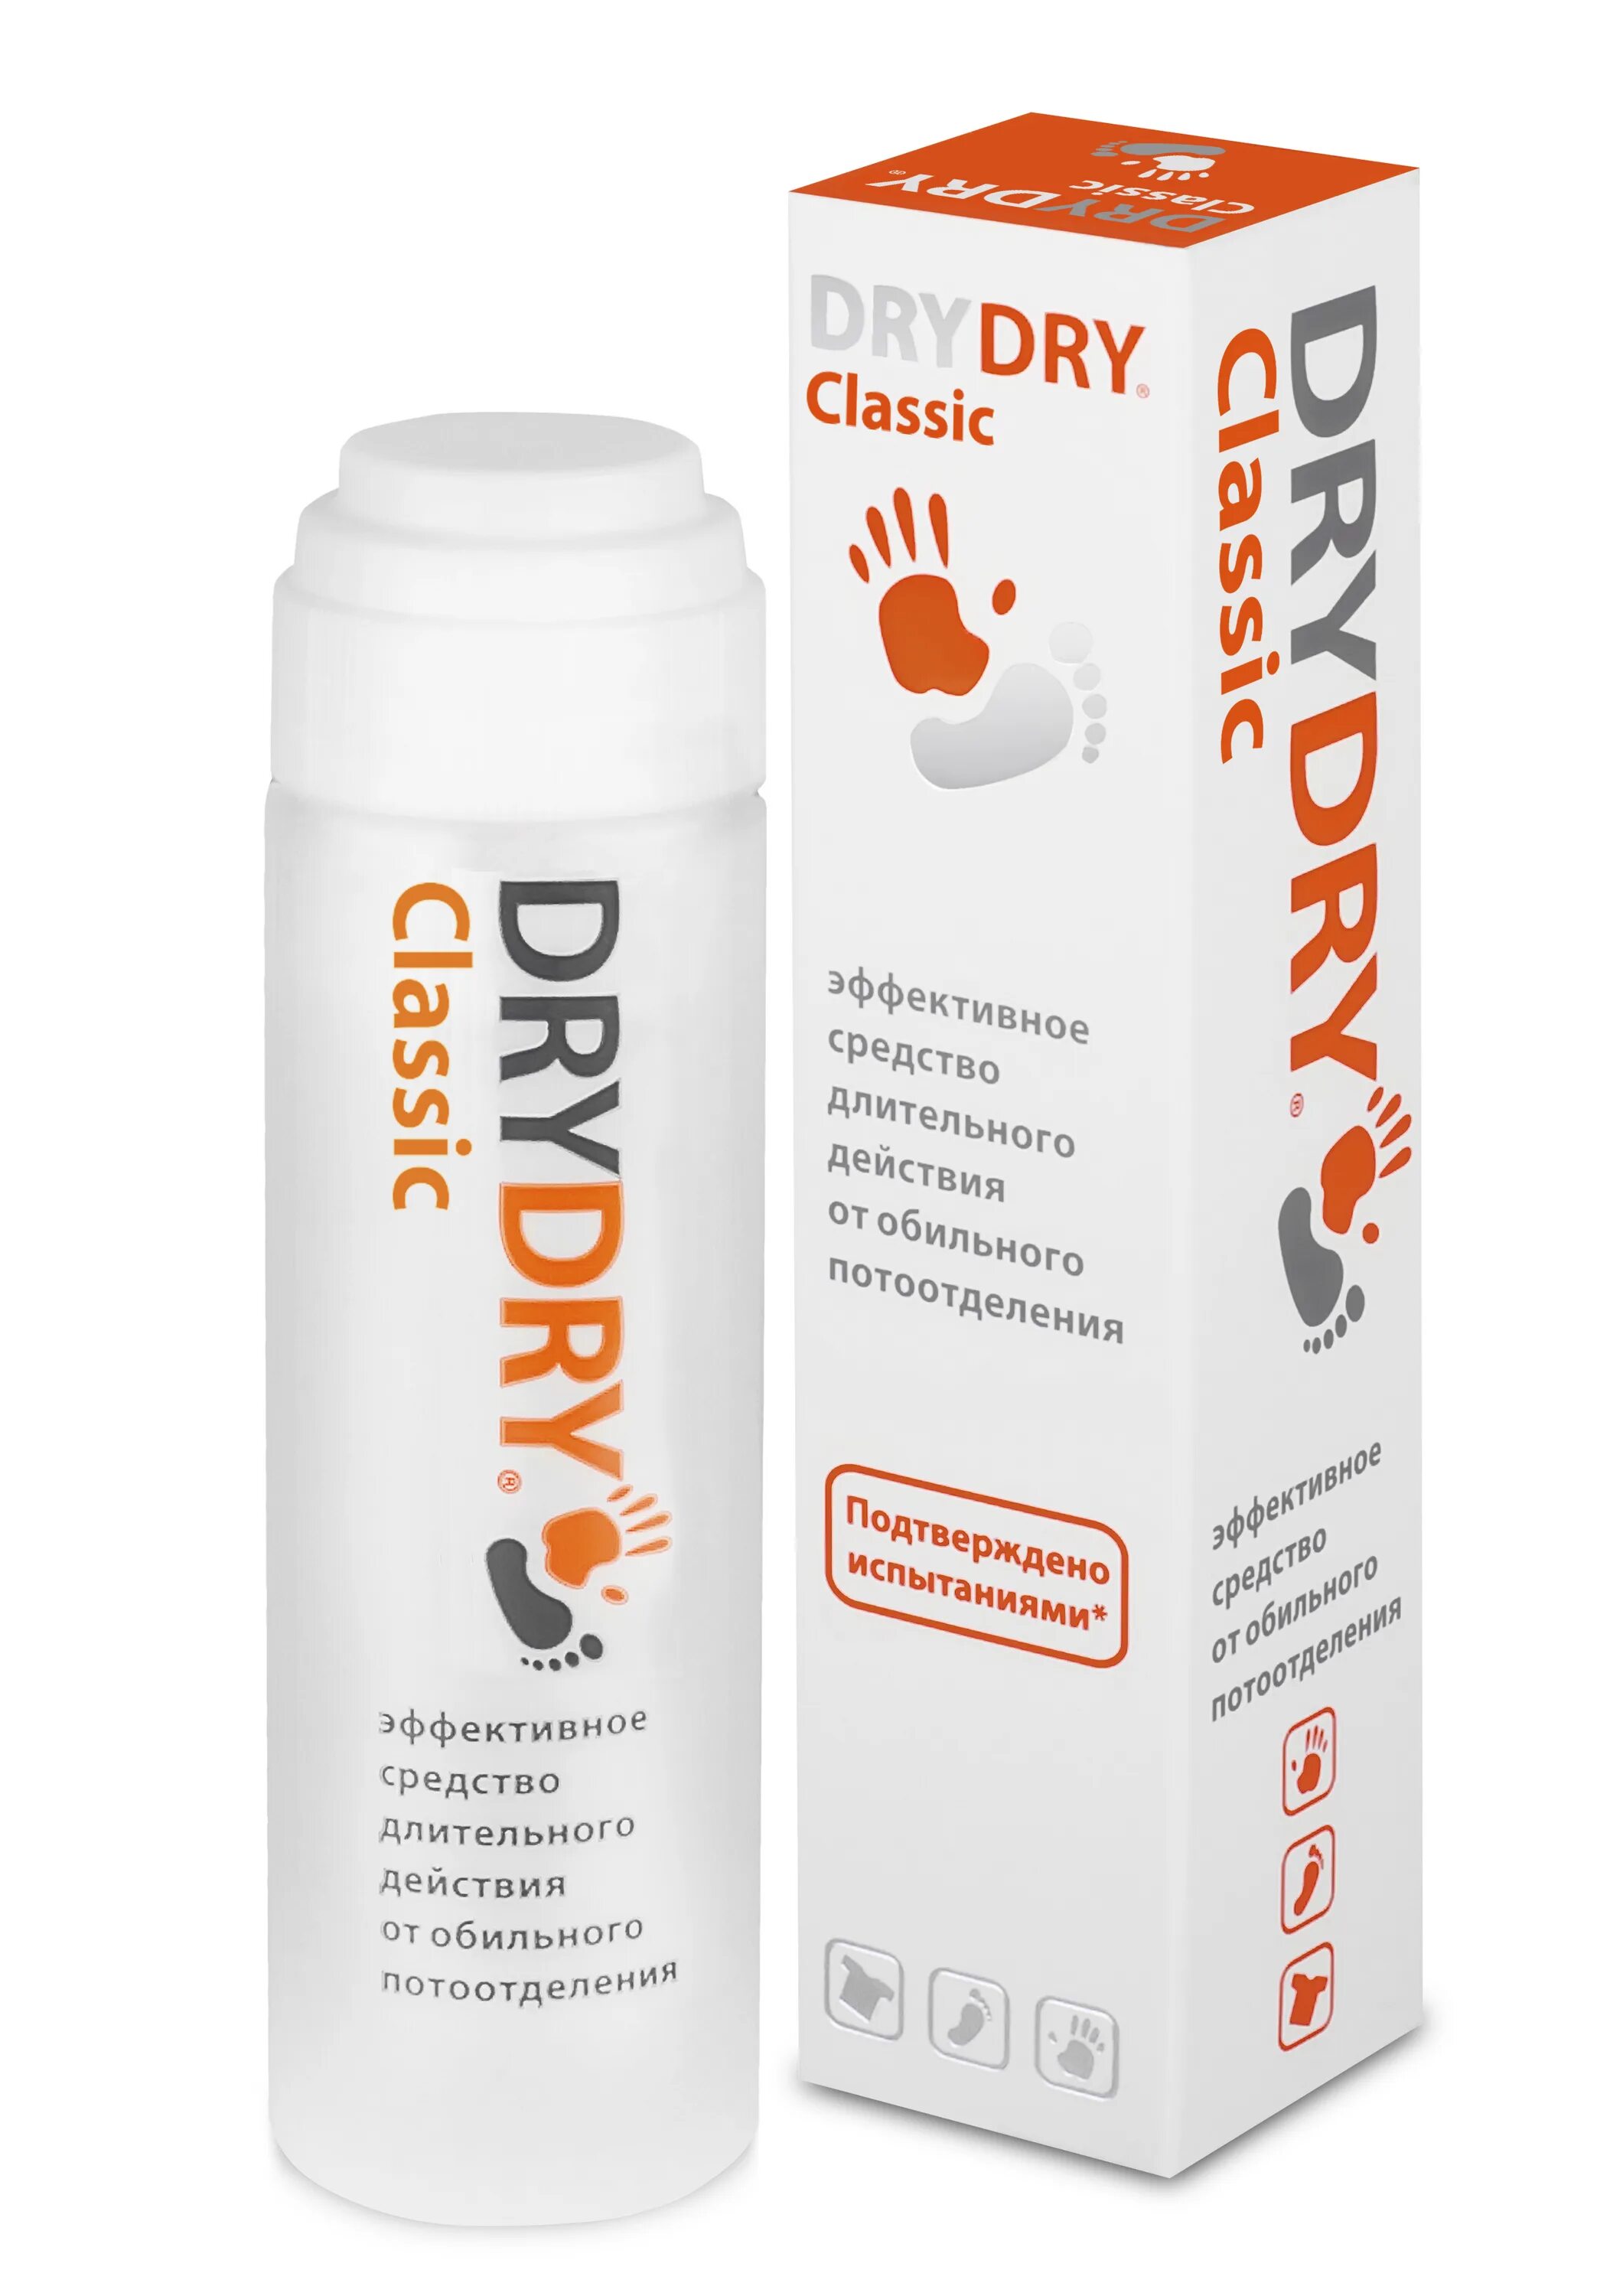 Драй драй (35мл). Дезодорант "Dry Dry" Classic 35мл. DRYDRY антиперспирант, дабоматик, Classic. Драй драй средство от обильного потовыделения 35 мл.